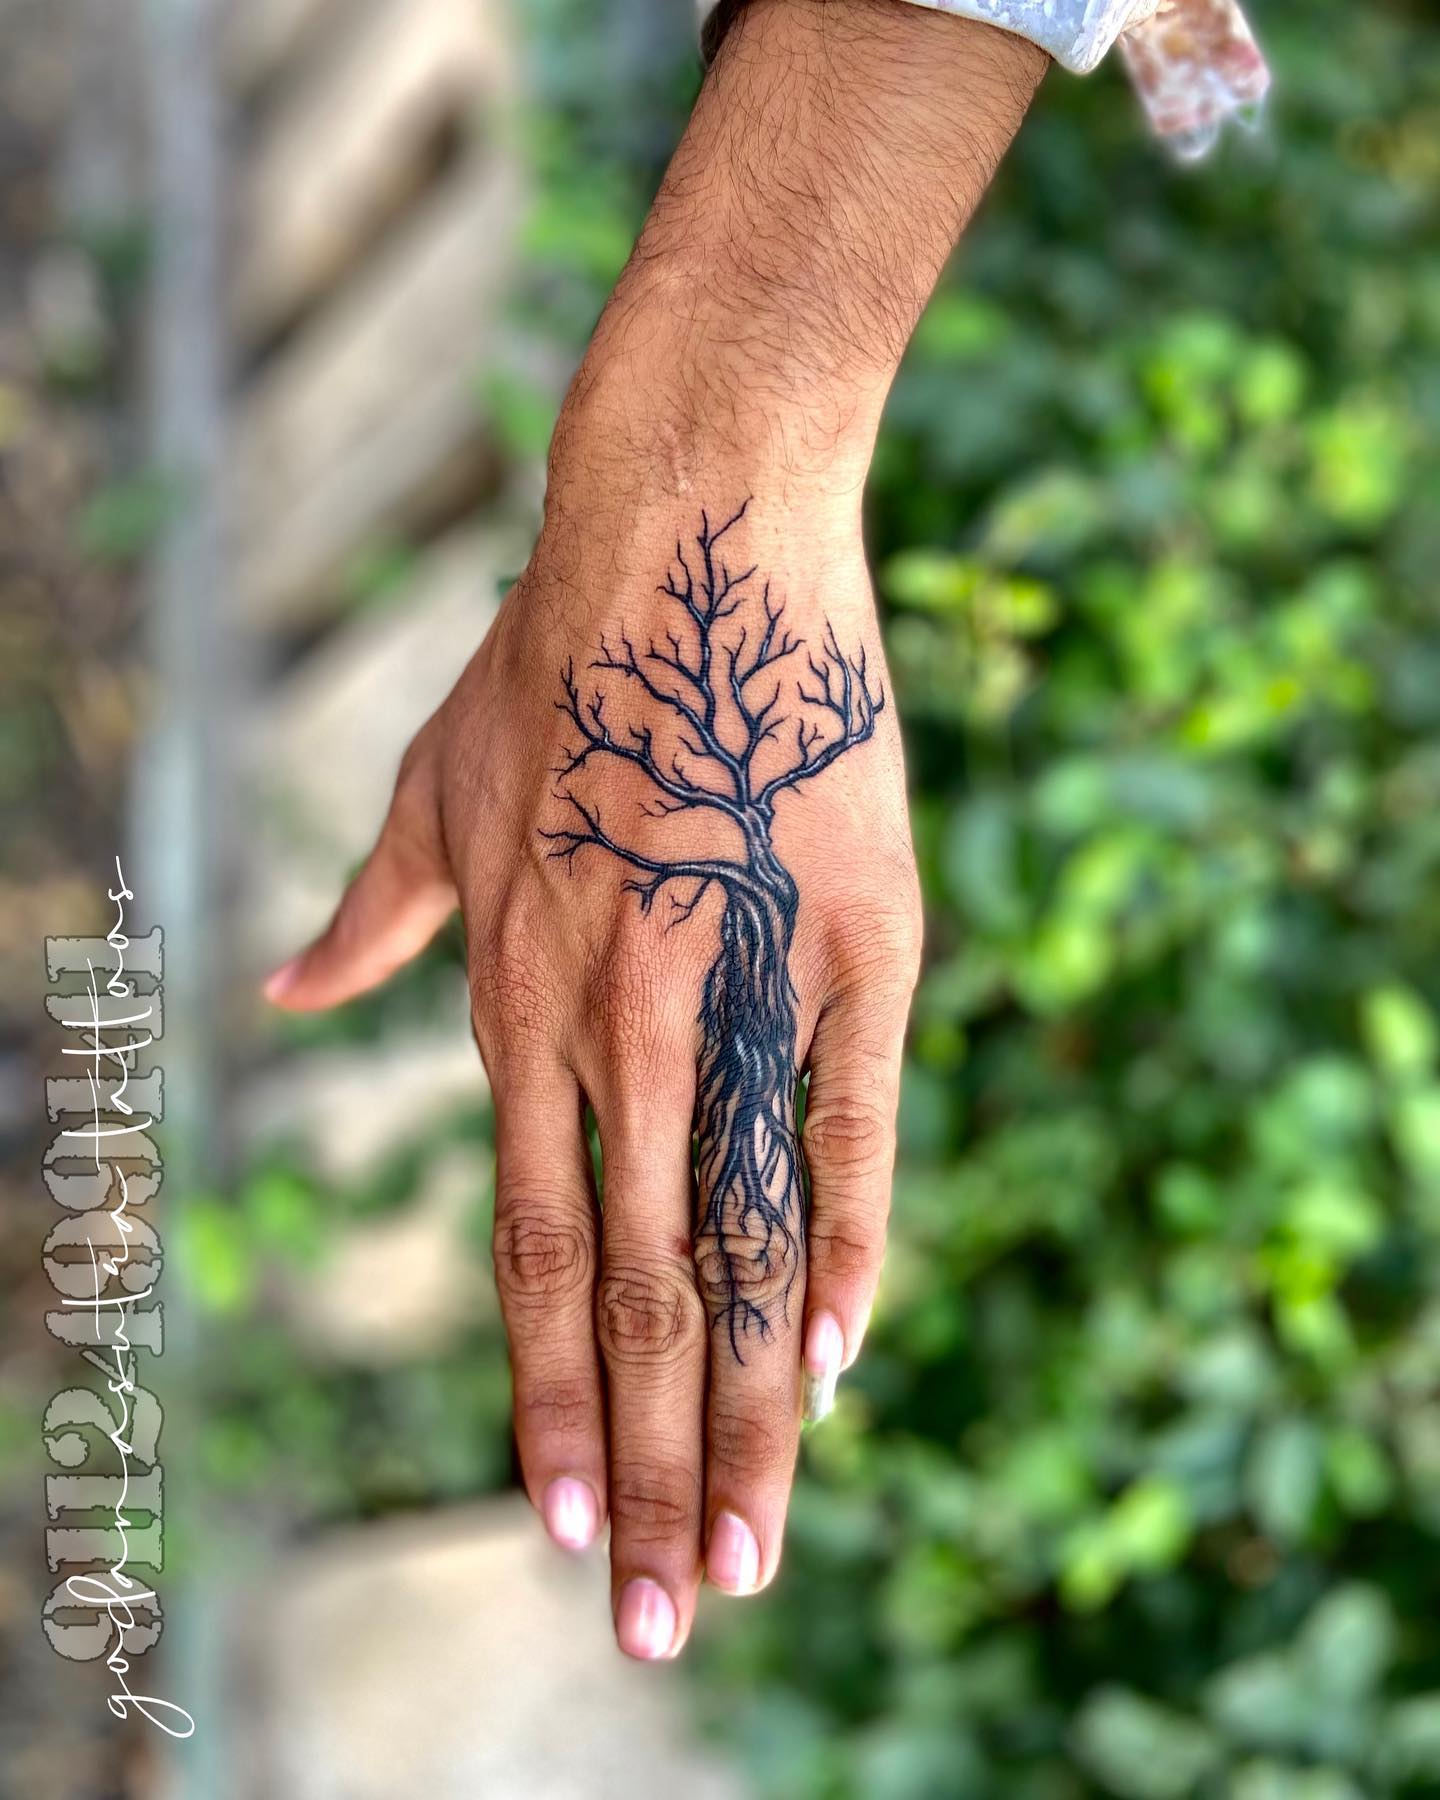 Tree of Life Tattoo  Ace Tattooz  Art Studio Mumbai India  Life tattoos  Tree of life tattoo Bird tattoo wrist